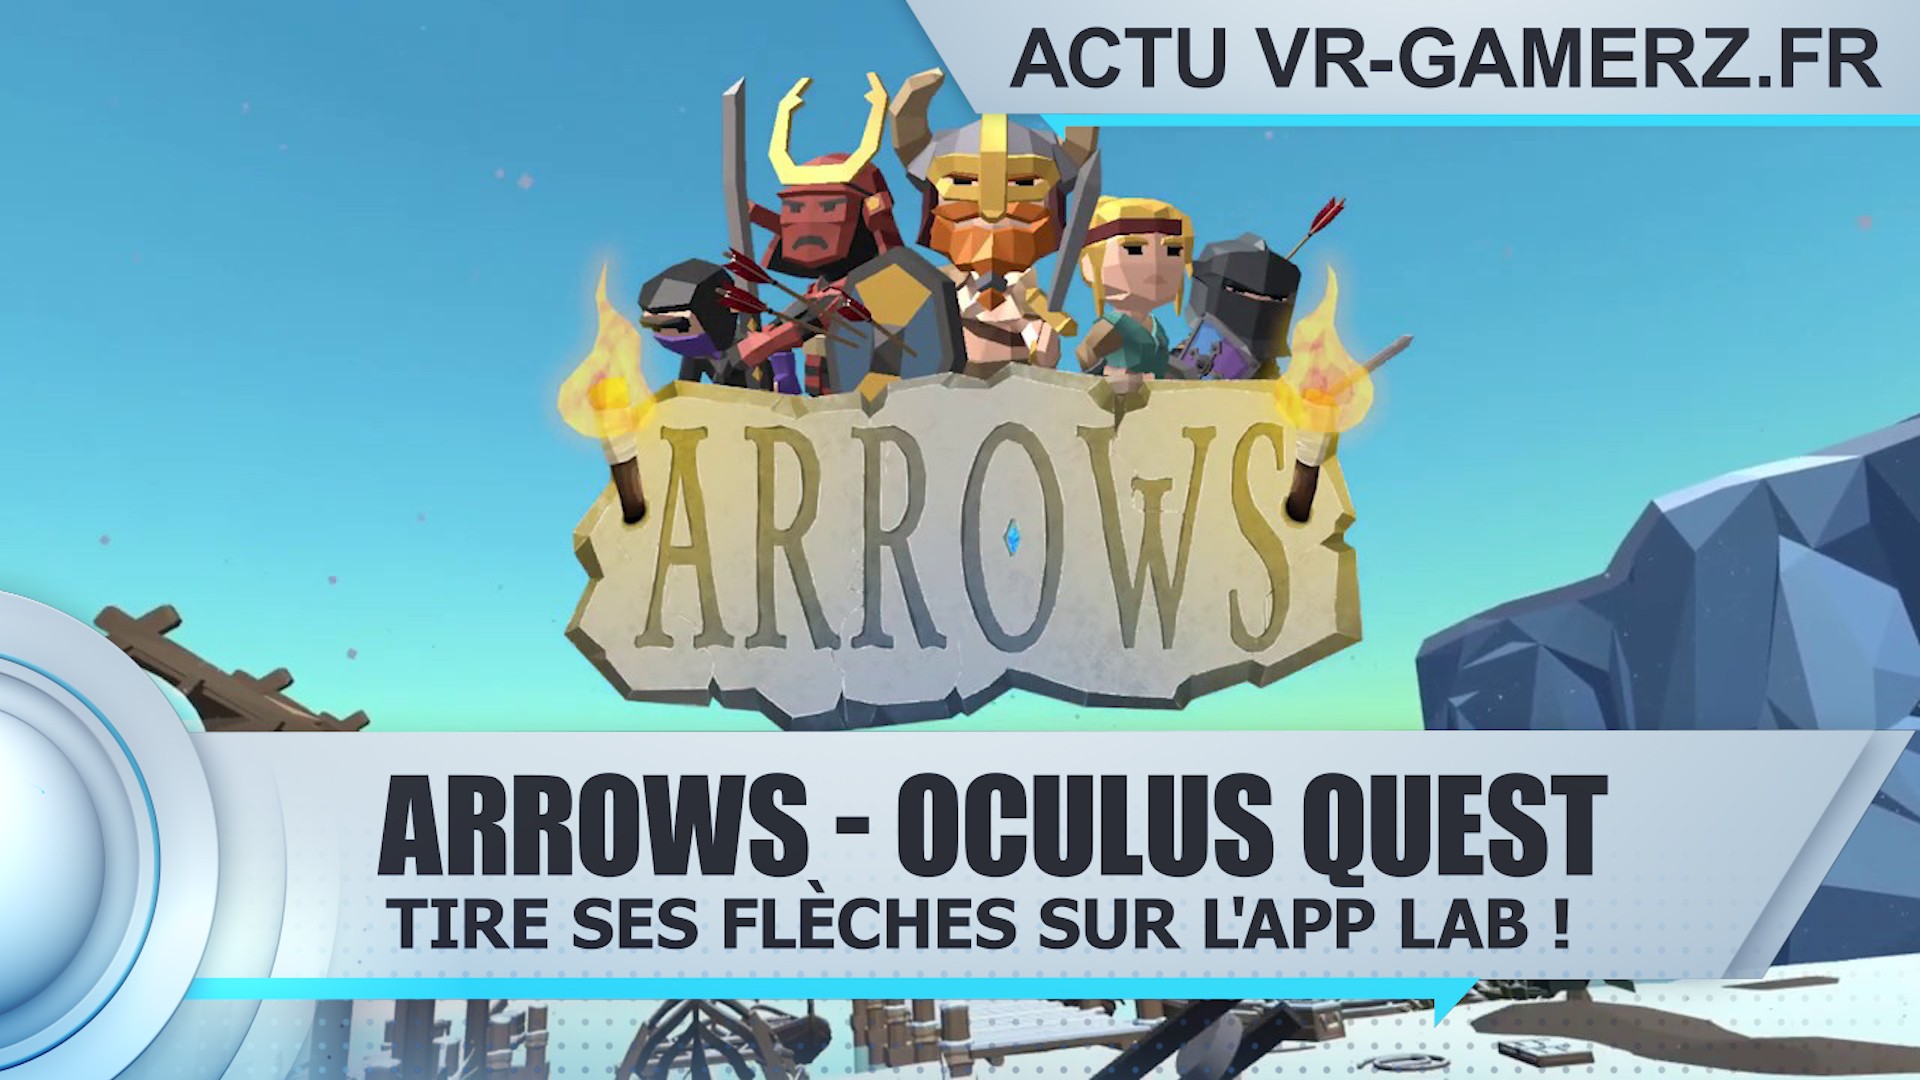 Arrows tire ses flèches sur l’App lab de l’Oculus quest !